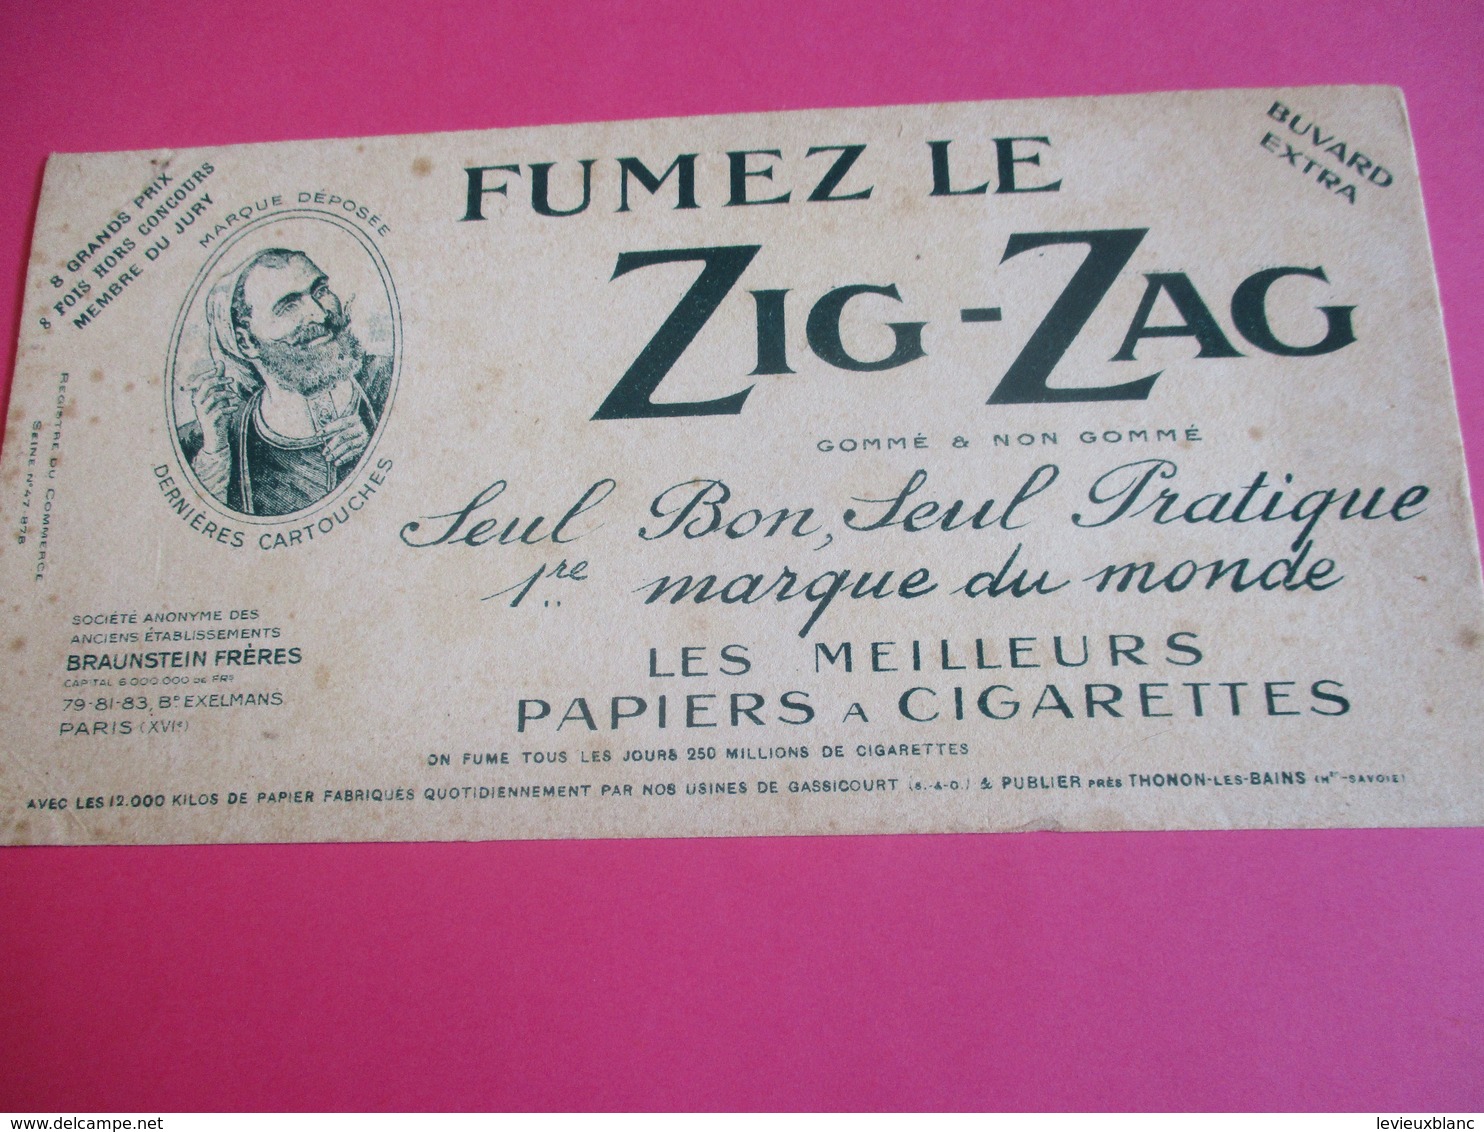 Buvard Extra/ Papier à Cigarette/ ZIG-ZAG/Fumez Le Zig-zag/1ére Marque Du Monde/Braunstein Fréres /1930-1950   BUV290 - Tabac & Cigarettes